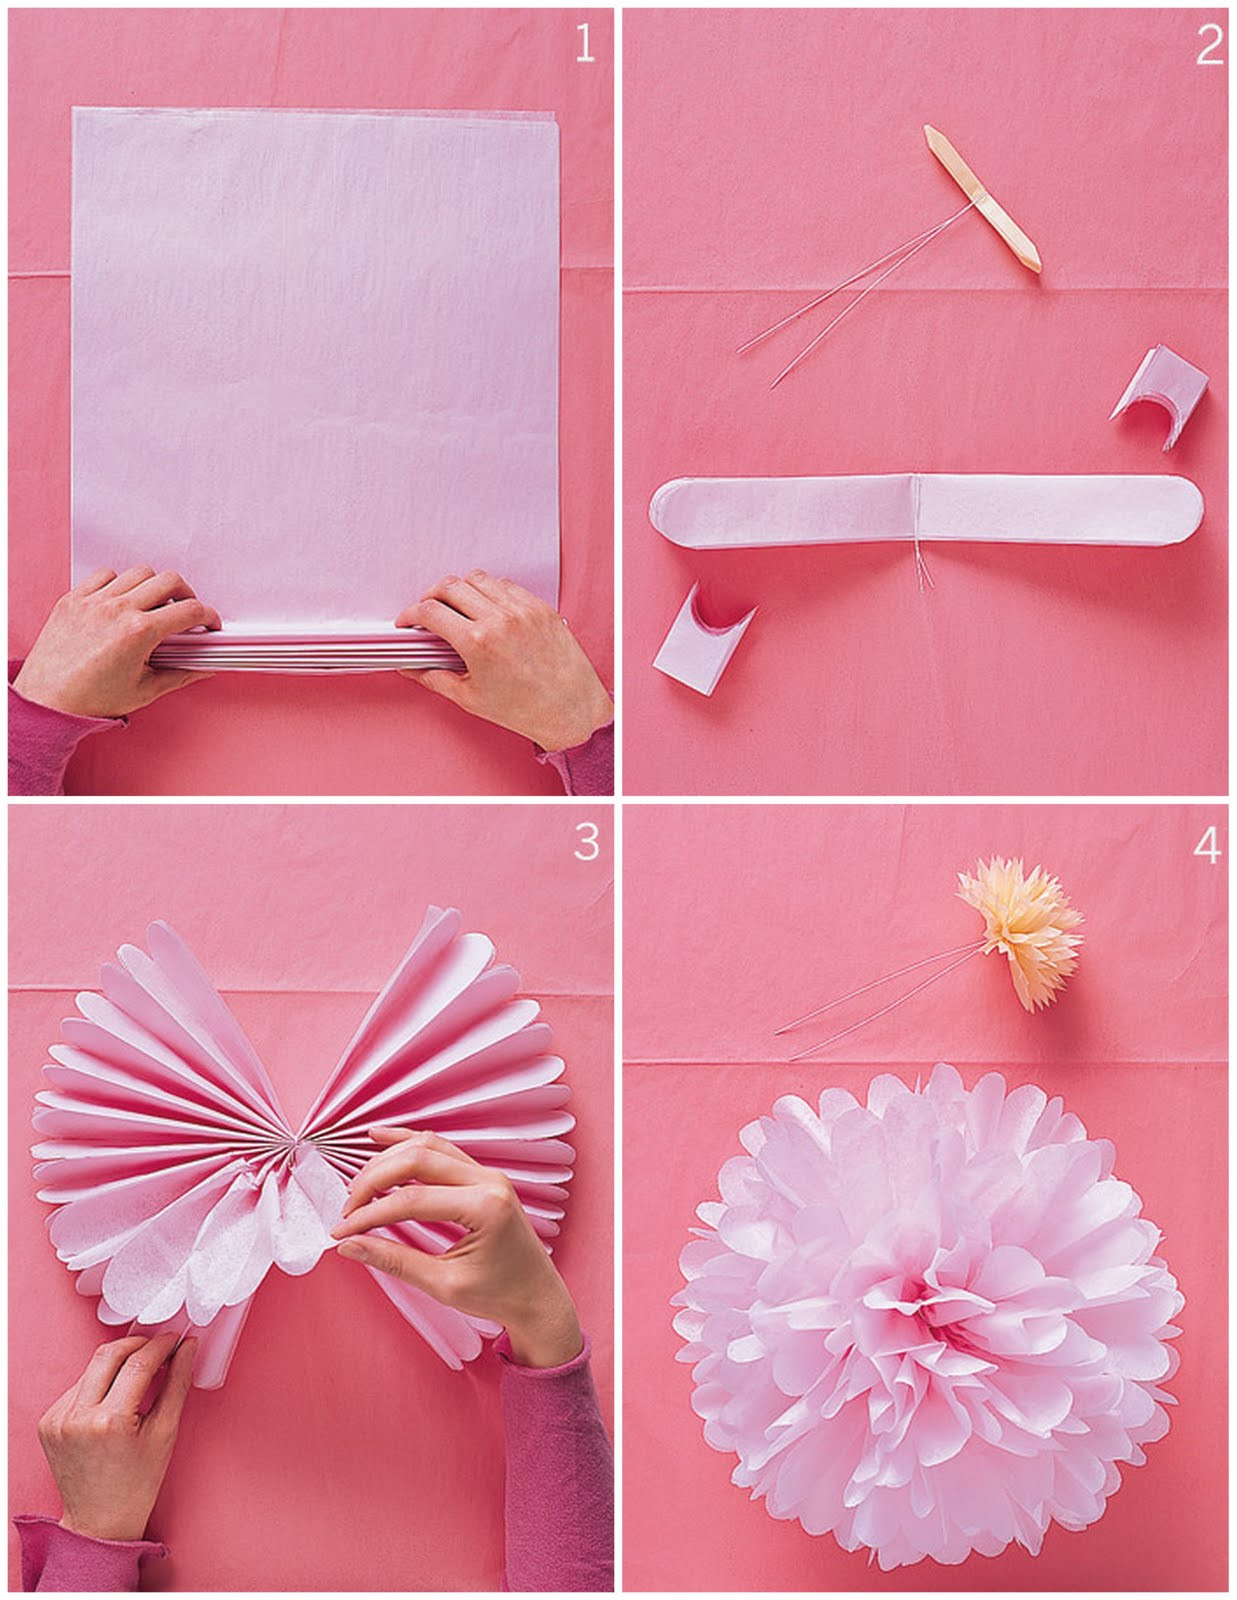 Best ideas about DIY Tissue Paper Pom Poms
. Save or Pin DIY or Don t Tutorial DIY Tissue Paper Pom Poms Now.